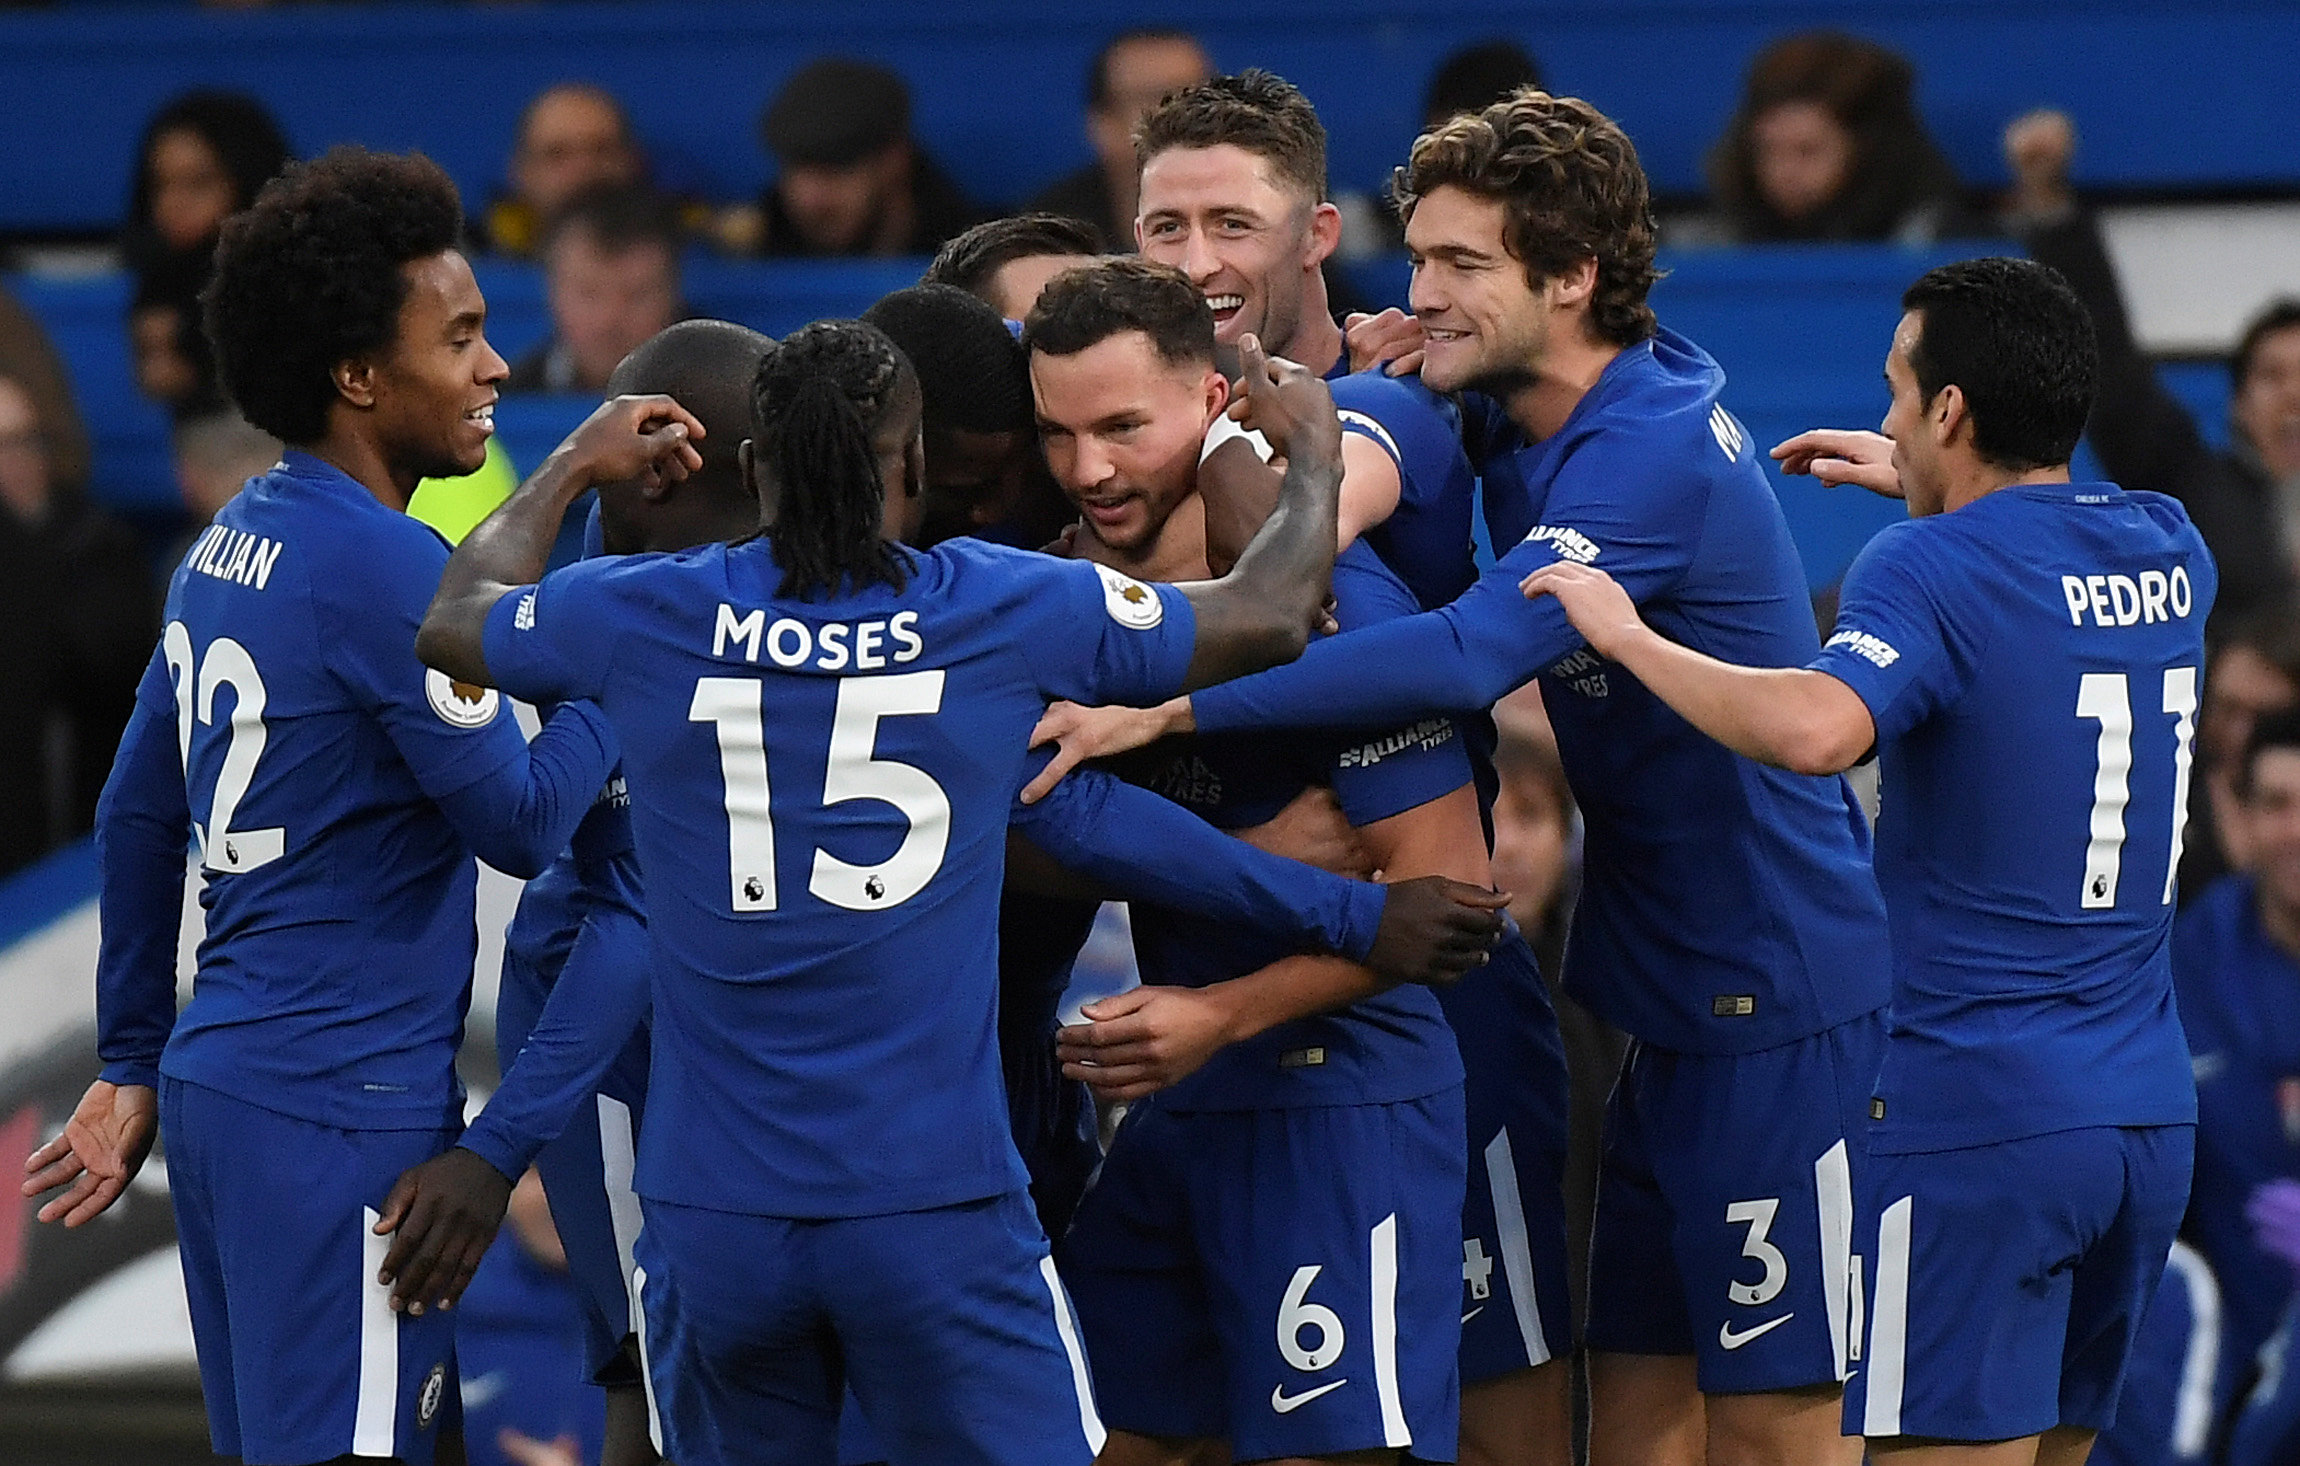 Niềm vui của các cầu thủ Chelsea sau khi Drinkwater nâng tỉ số lên 2-0. Ảnh: REUTERS